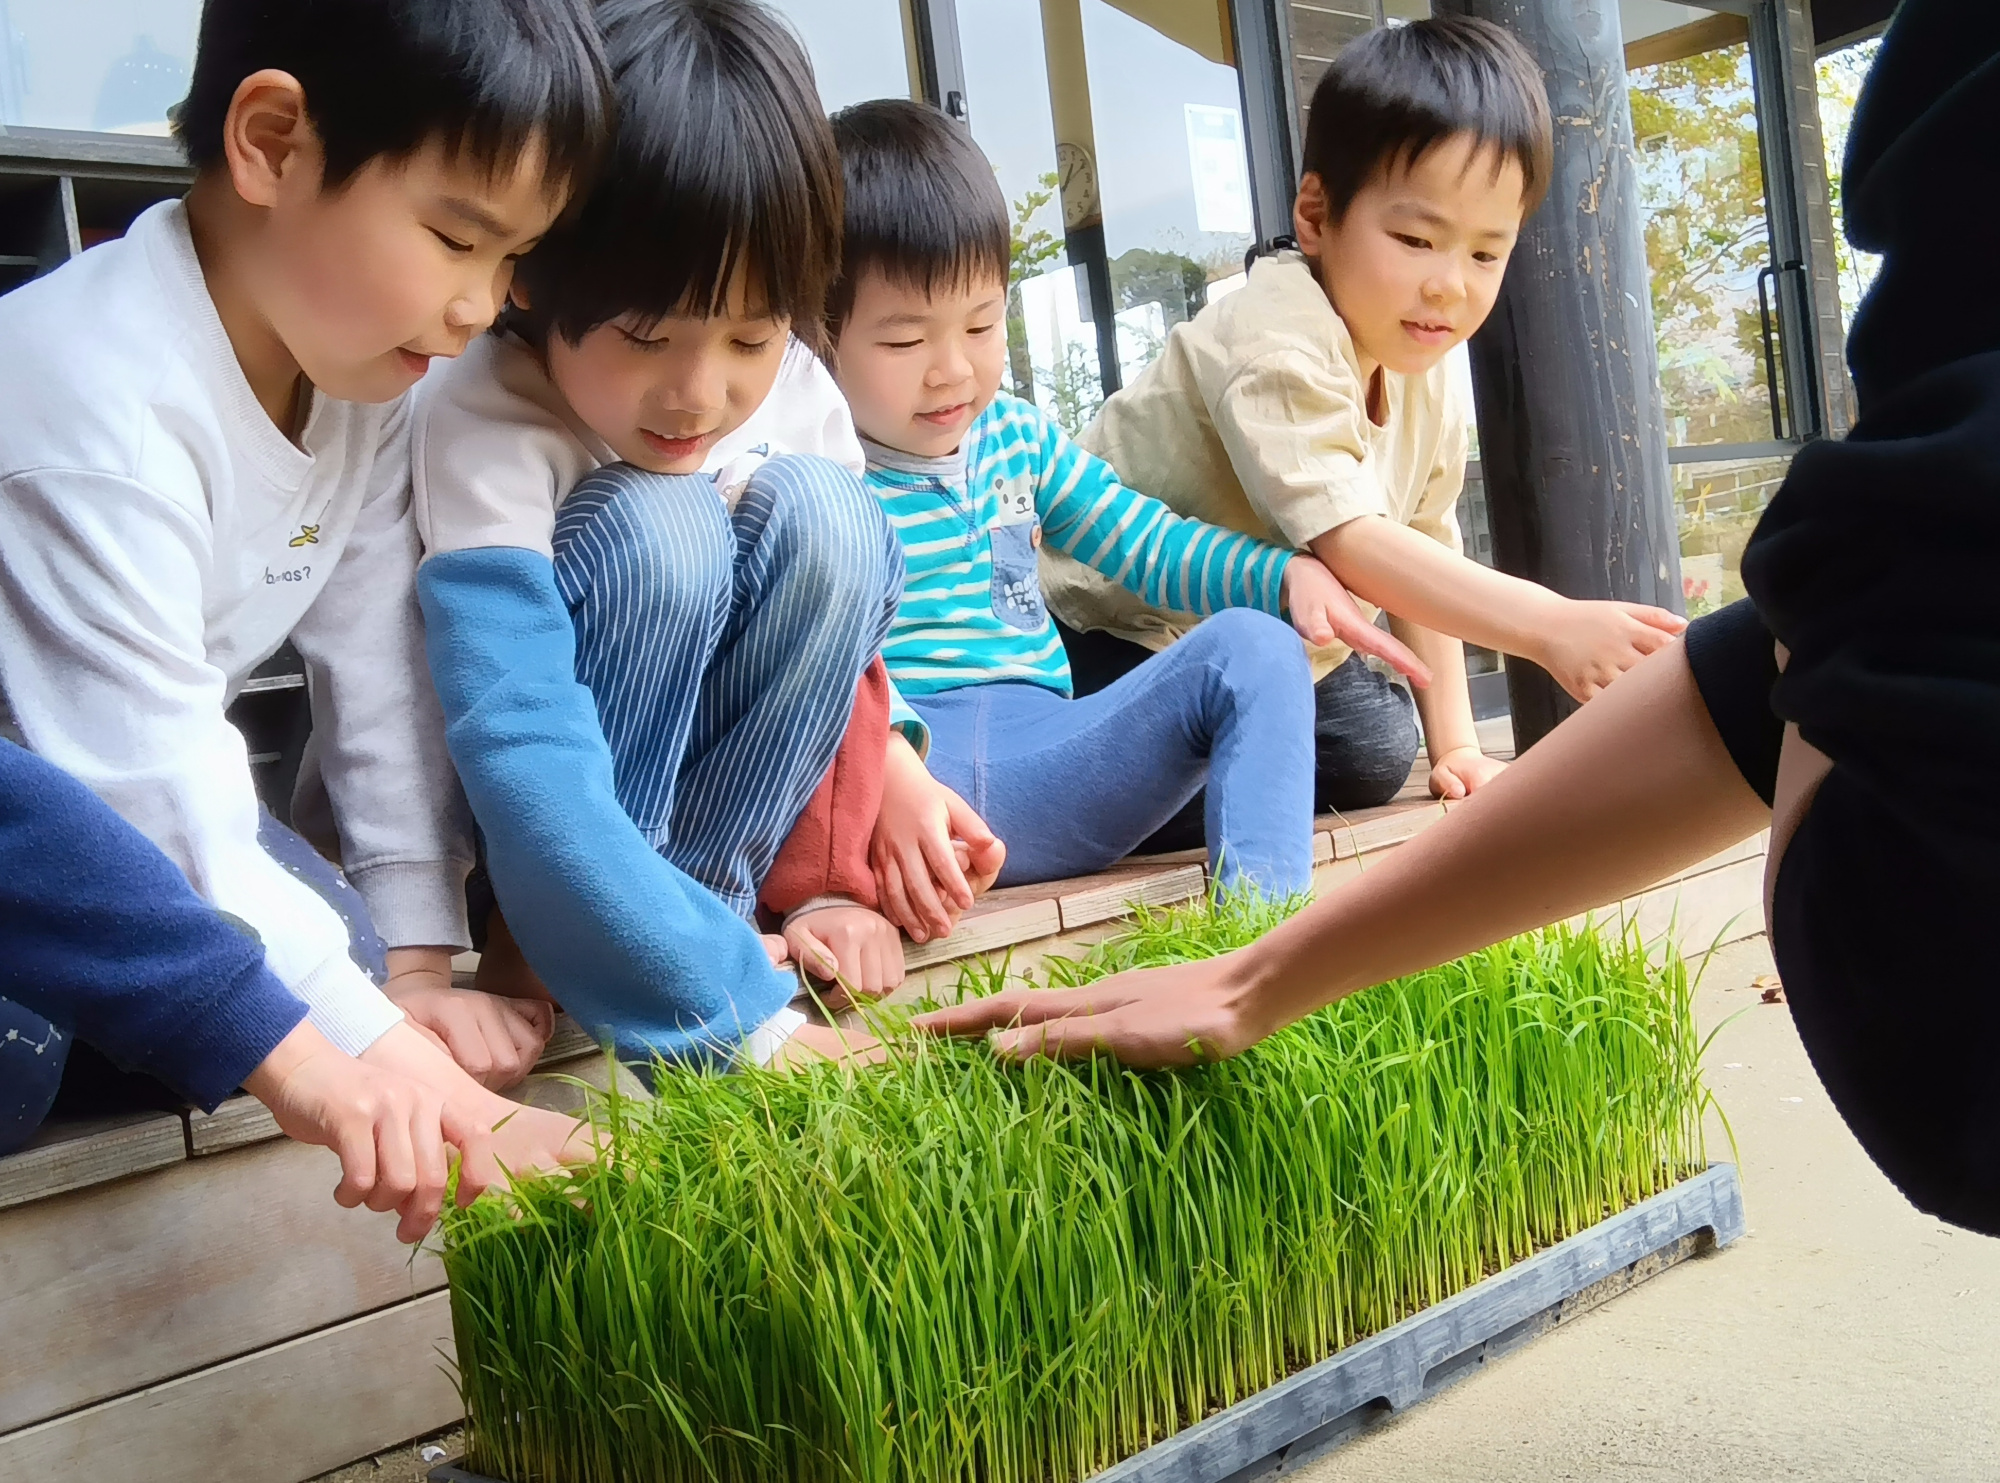 田植え用の稲に触れる子どもたち